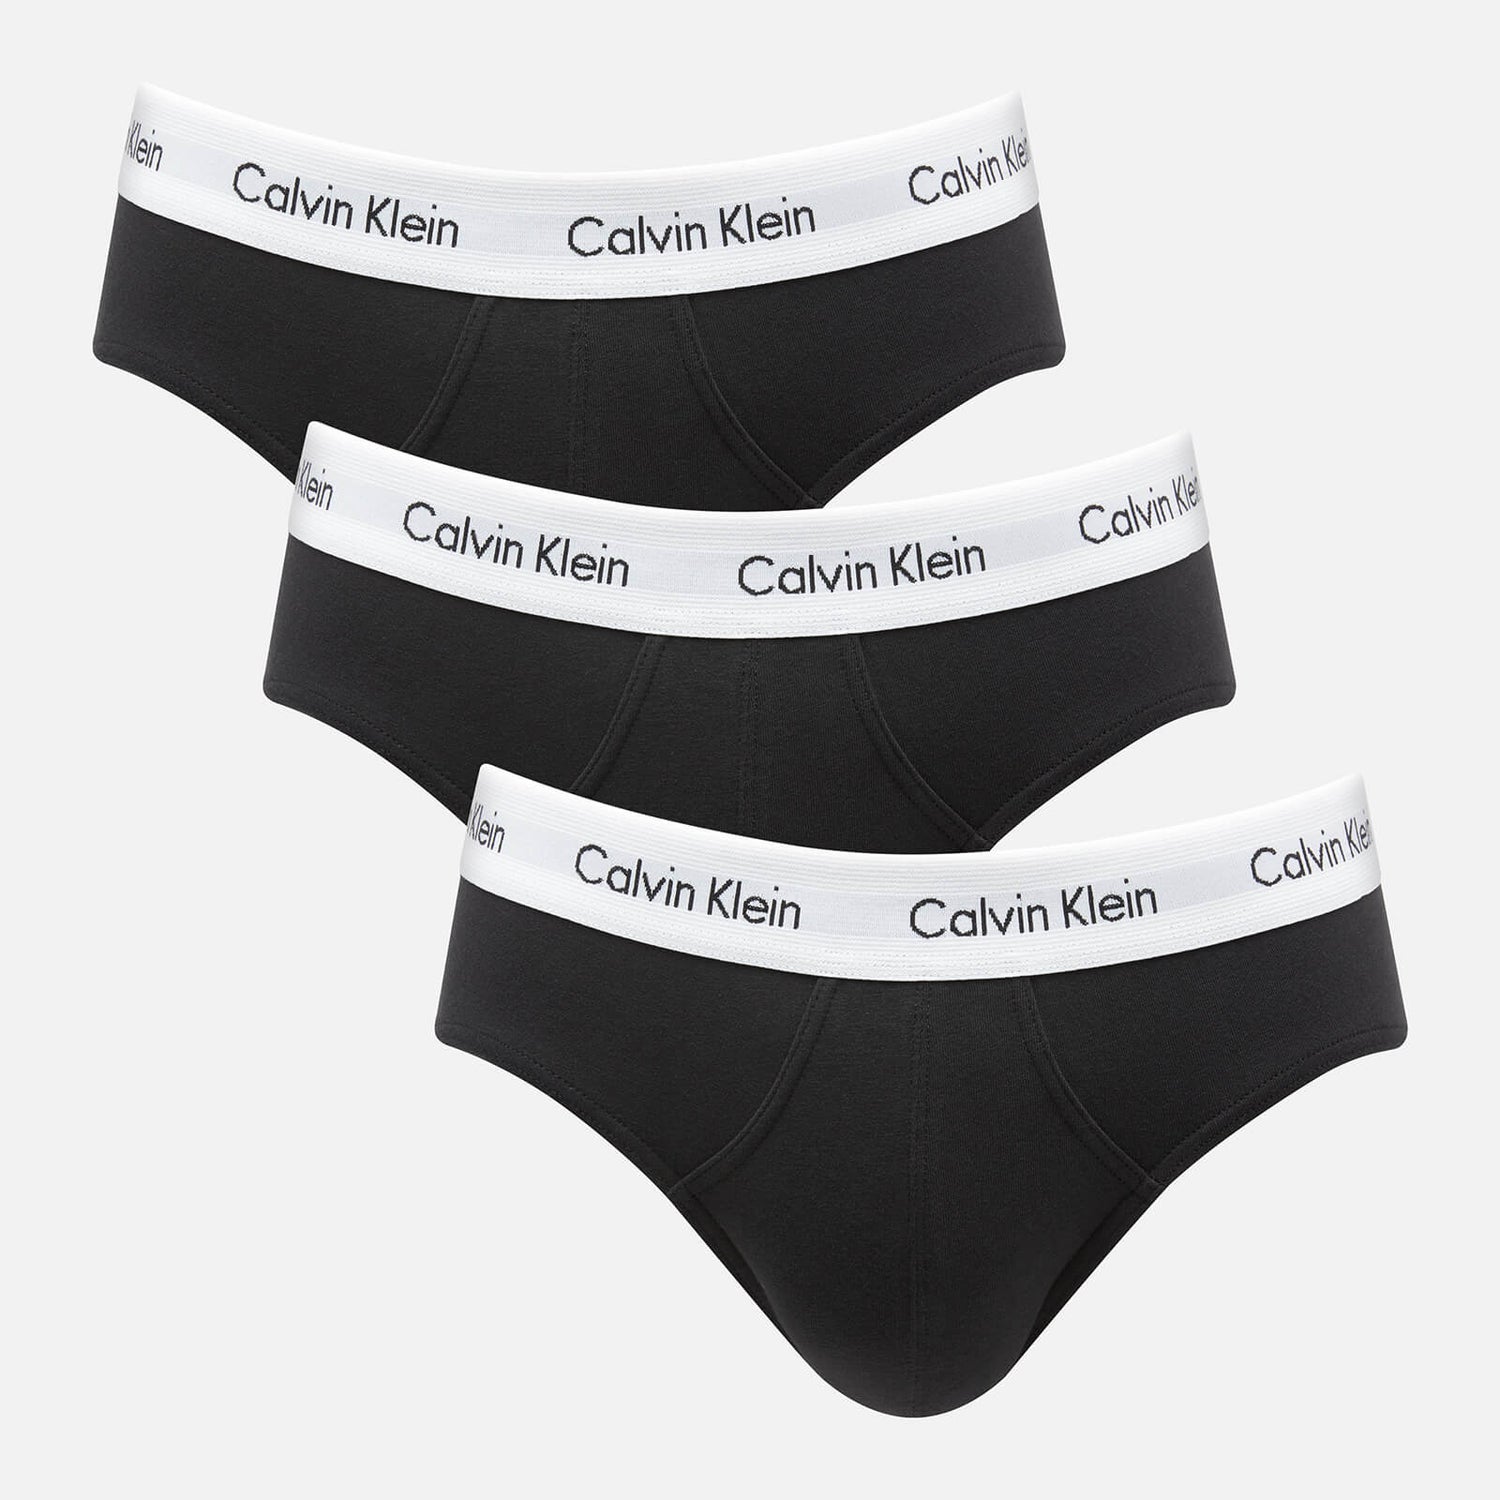 Calvin Klein Men's 3-Pack Briefs - Black - S